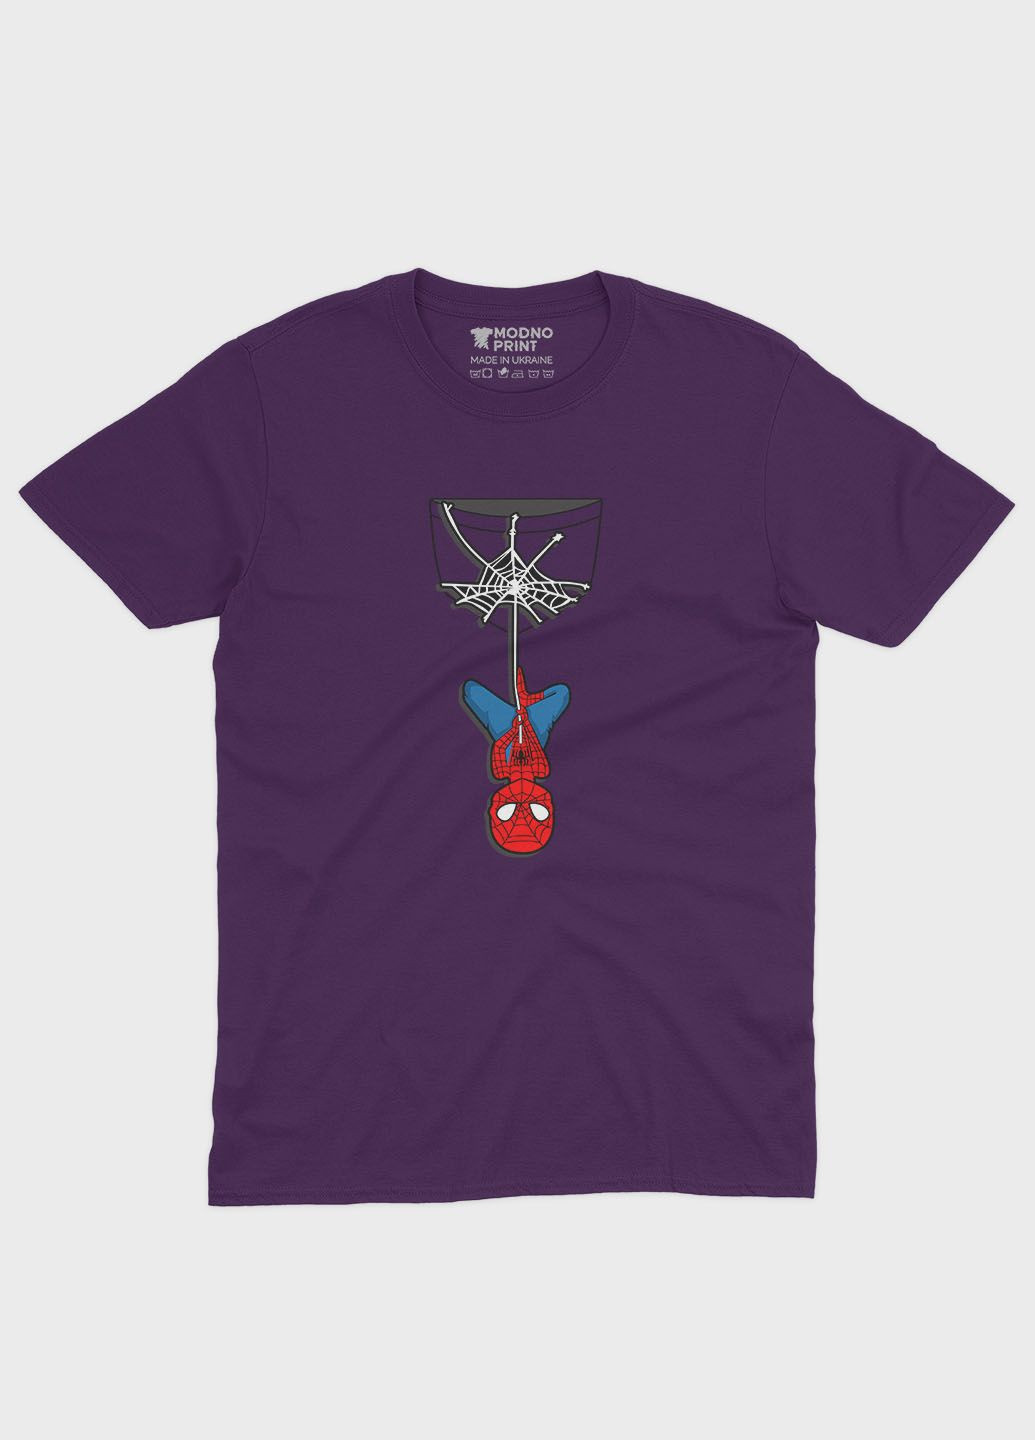 Фиолетовая демисезонная футболка для девочки с принтом супергероя - человек-паук (ts001-1-dby-006-014-039-g) Modno